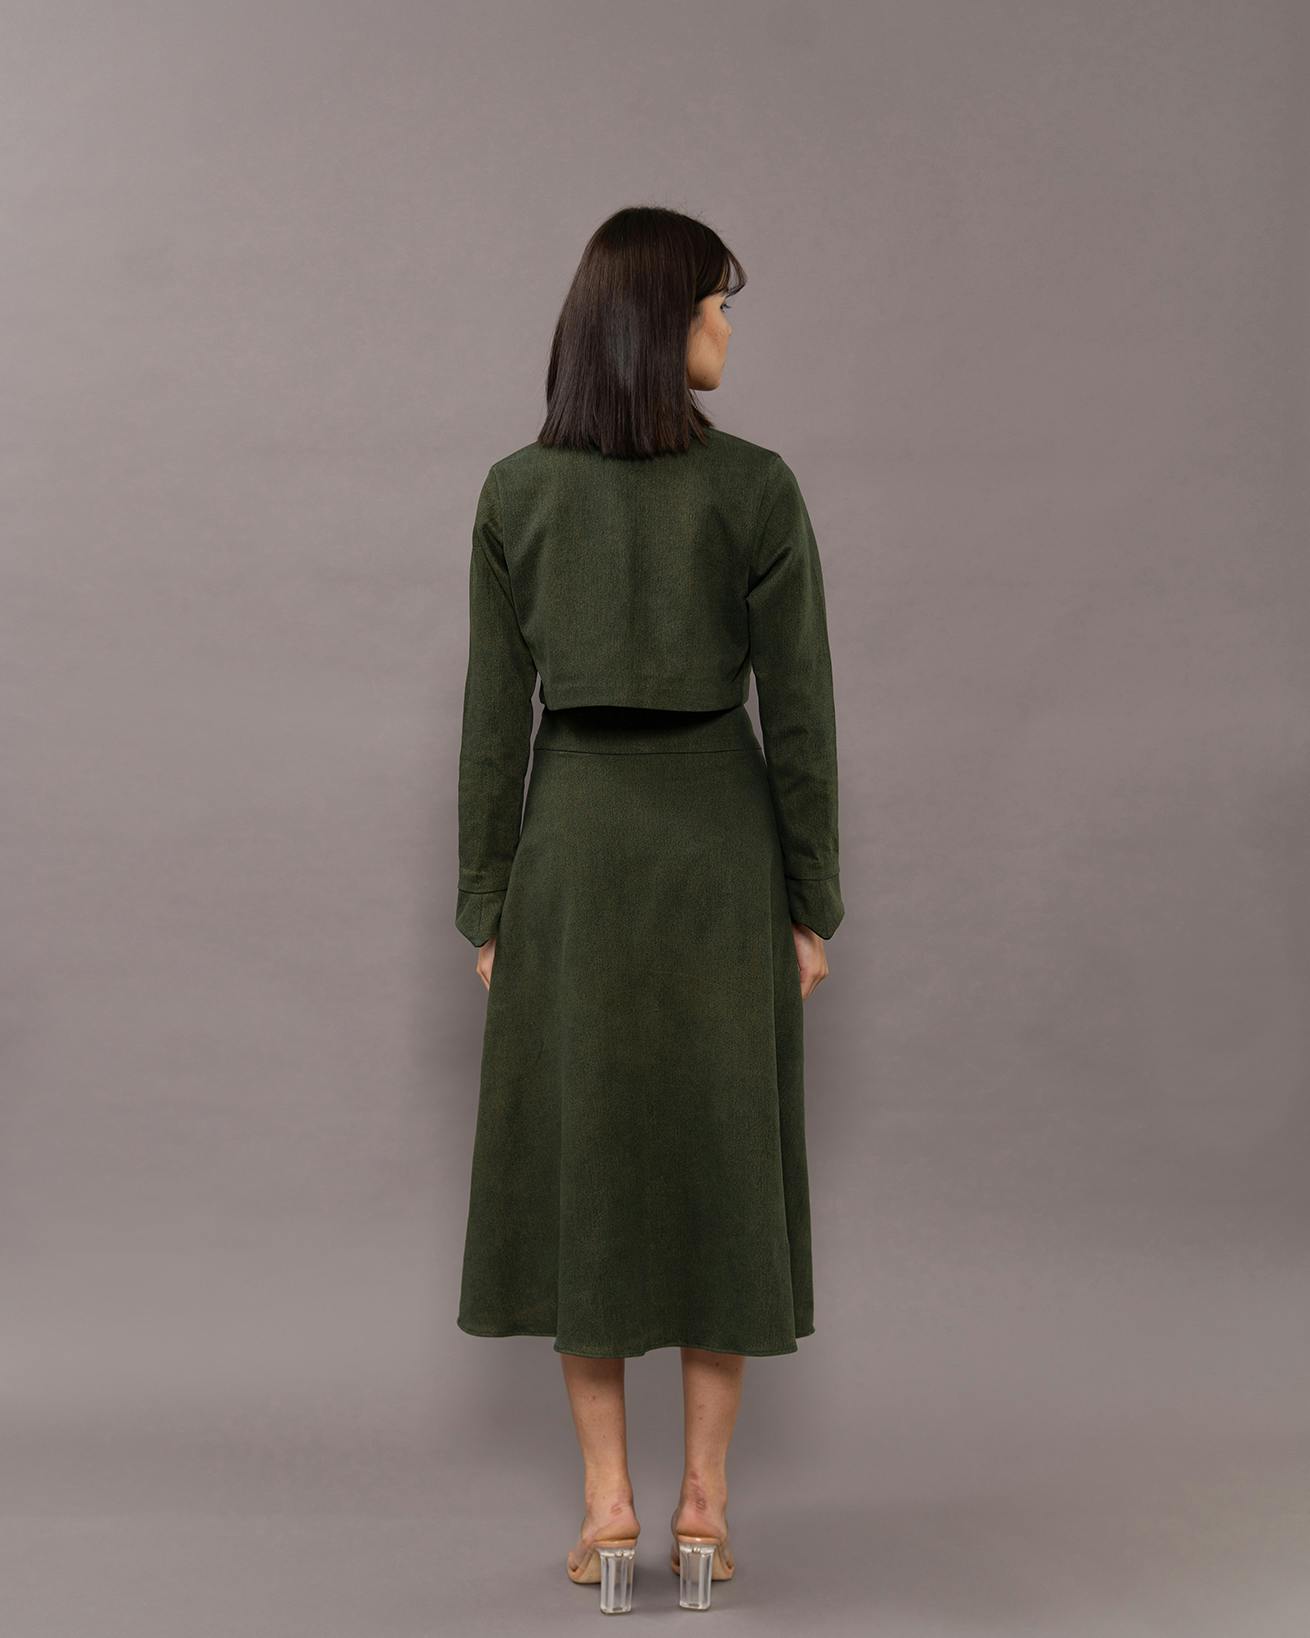 Thumbnail preview #2 for Dark green denim skirt set